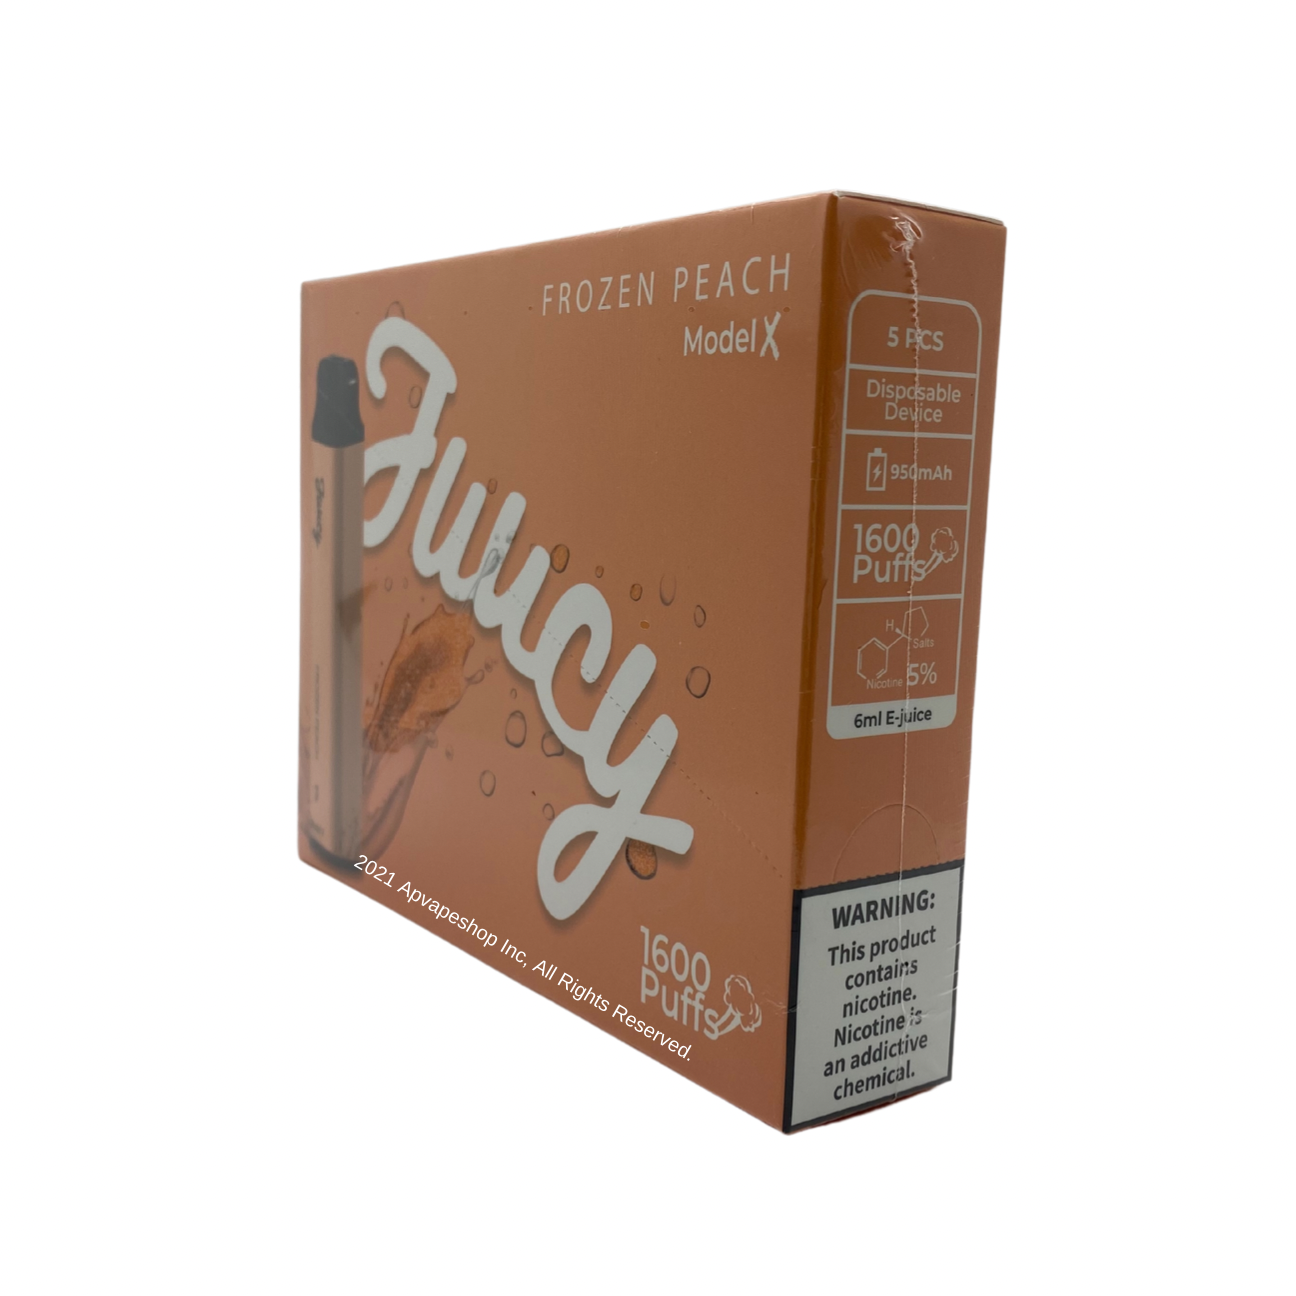 JUUCY Model X 1600 Puffs Disposable Vape Frozen Peach